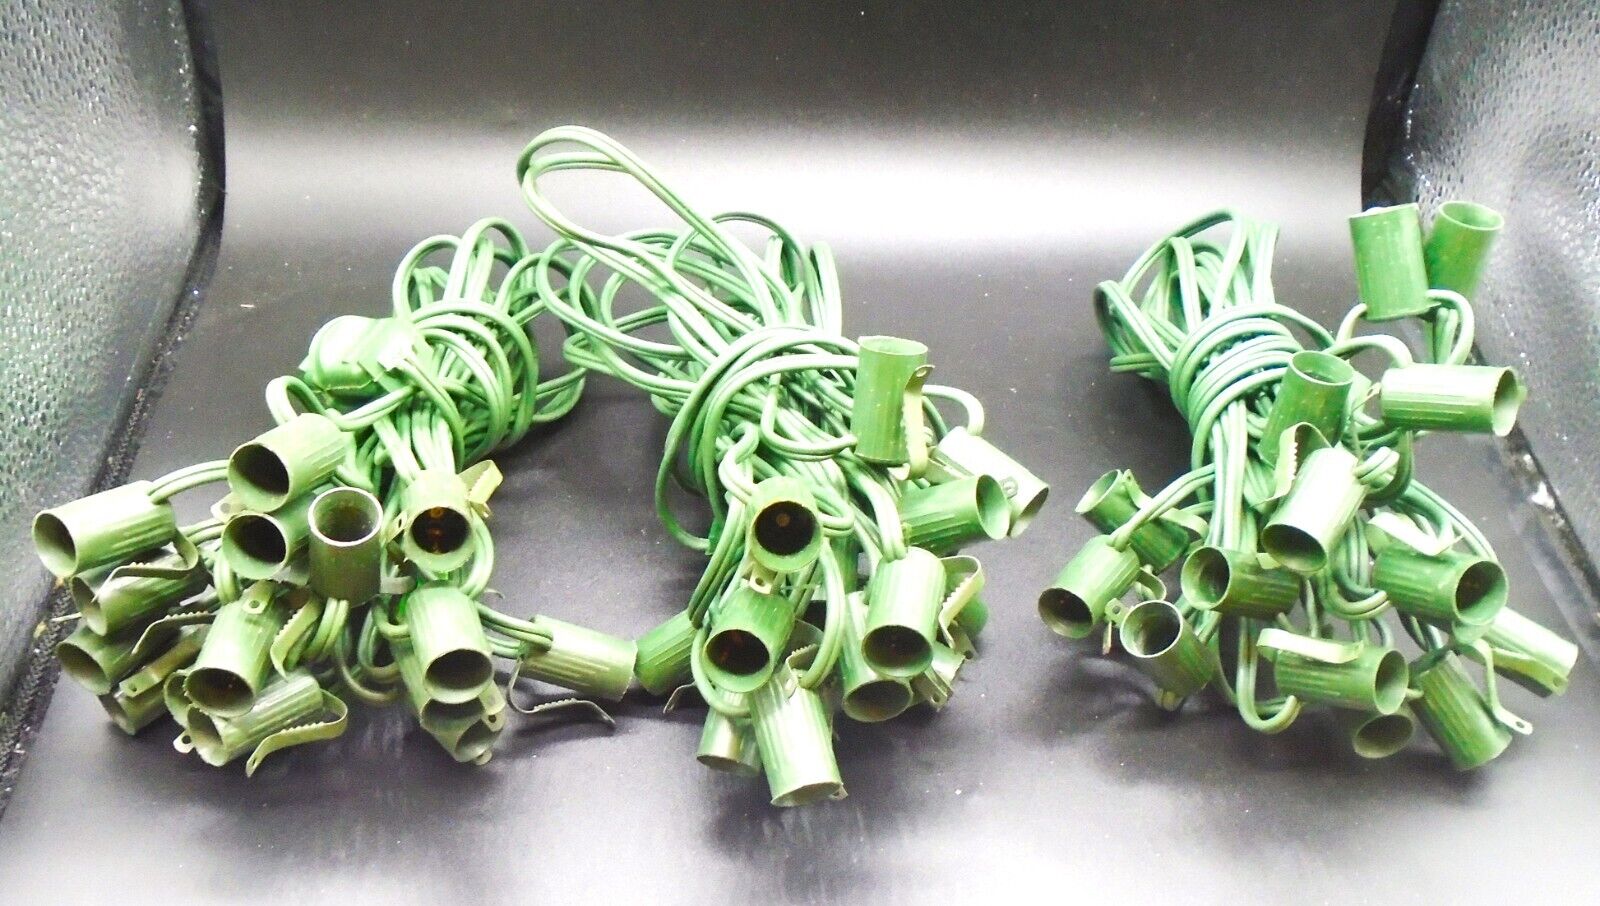 3 sets of 10 socket GE Vintage c-7 Christmas Lights strings